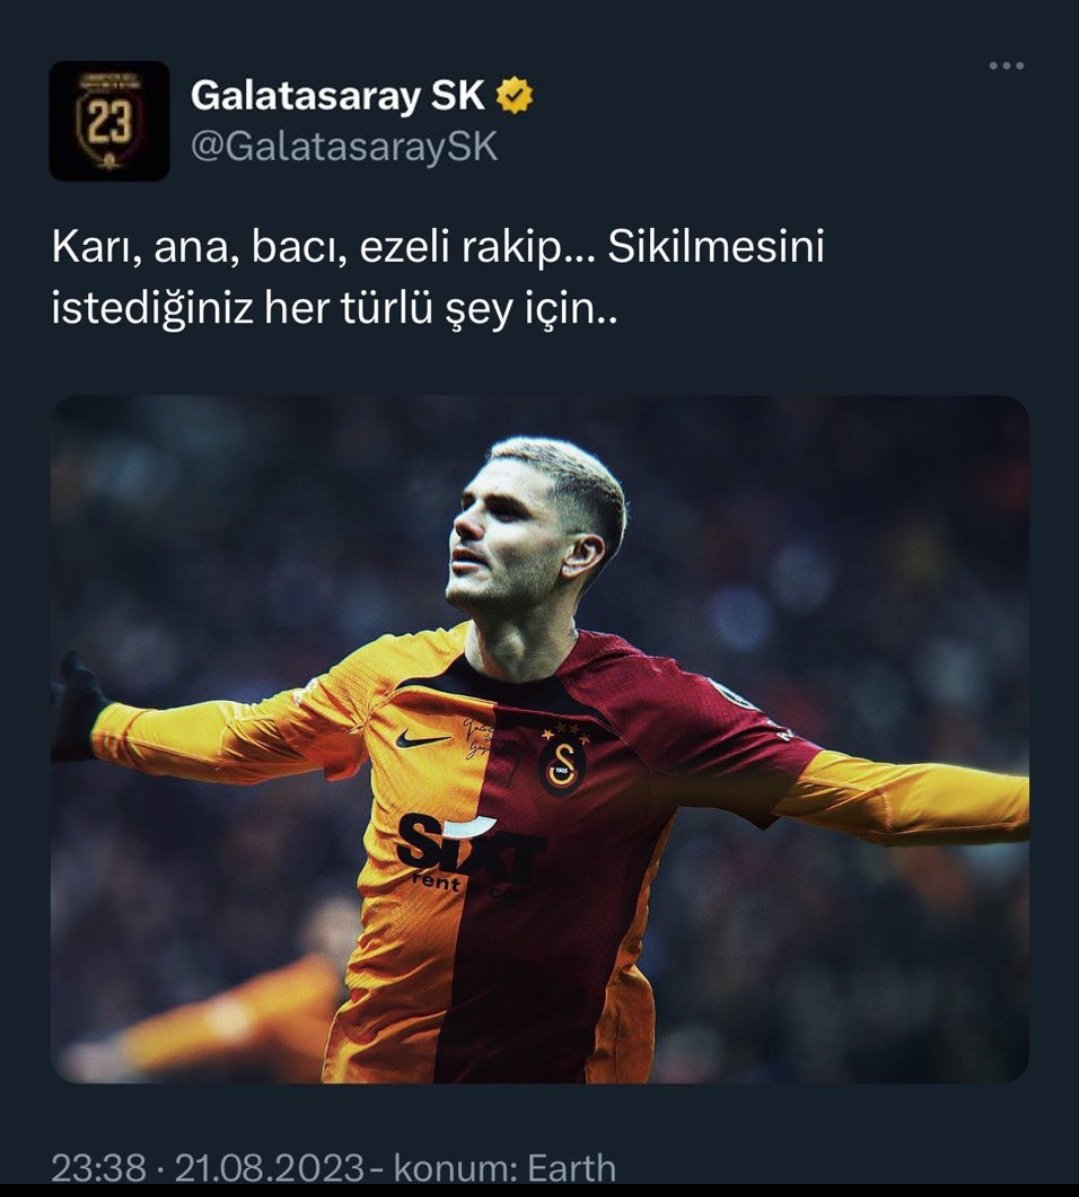 @GalatasaraySK İyi geceler.